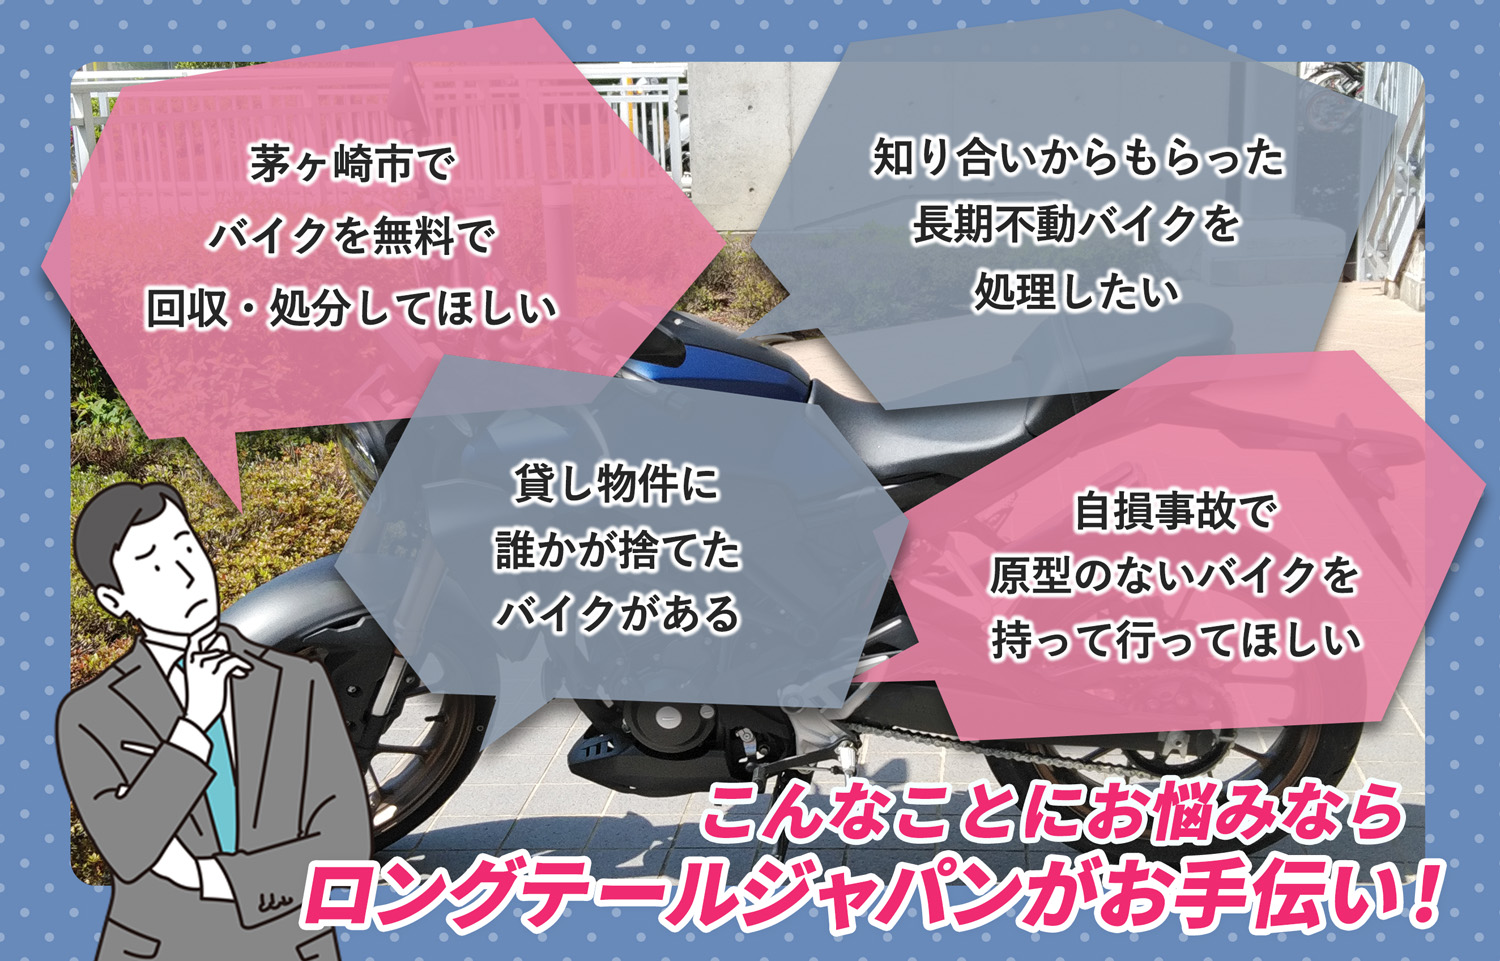 茅ヶ崎市でこんなバイクの処分にお困りでしたらバイク無料回収処分隊がお手伝いいたします。